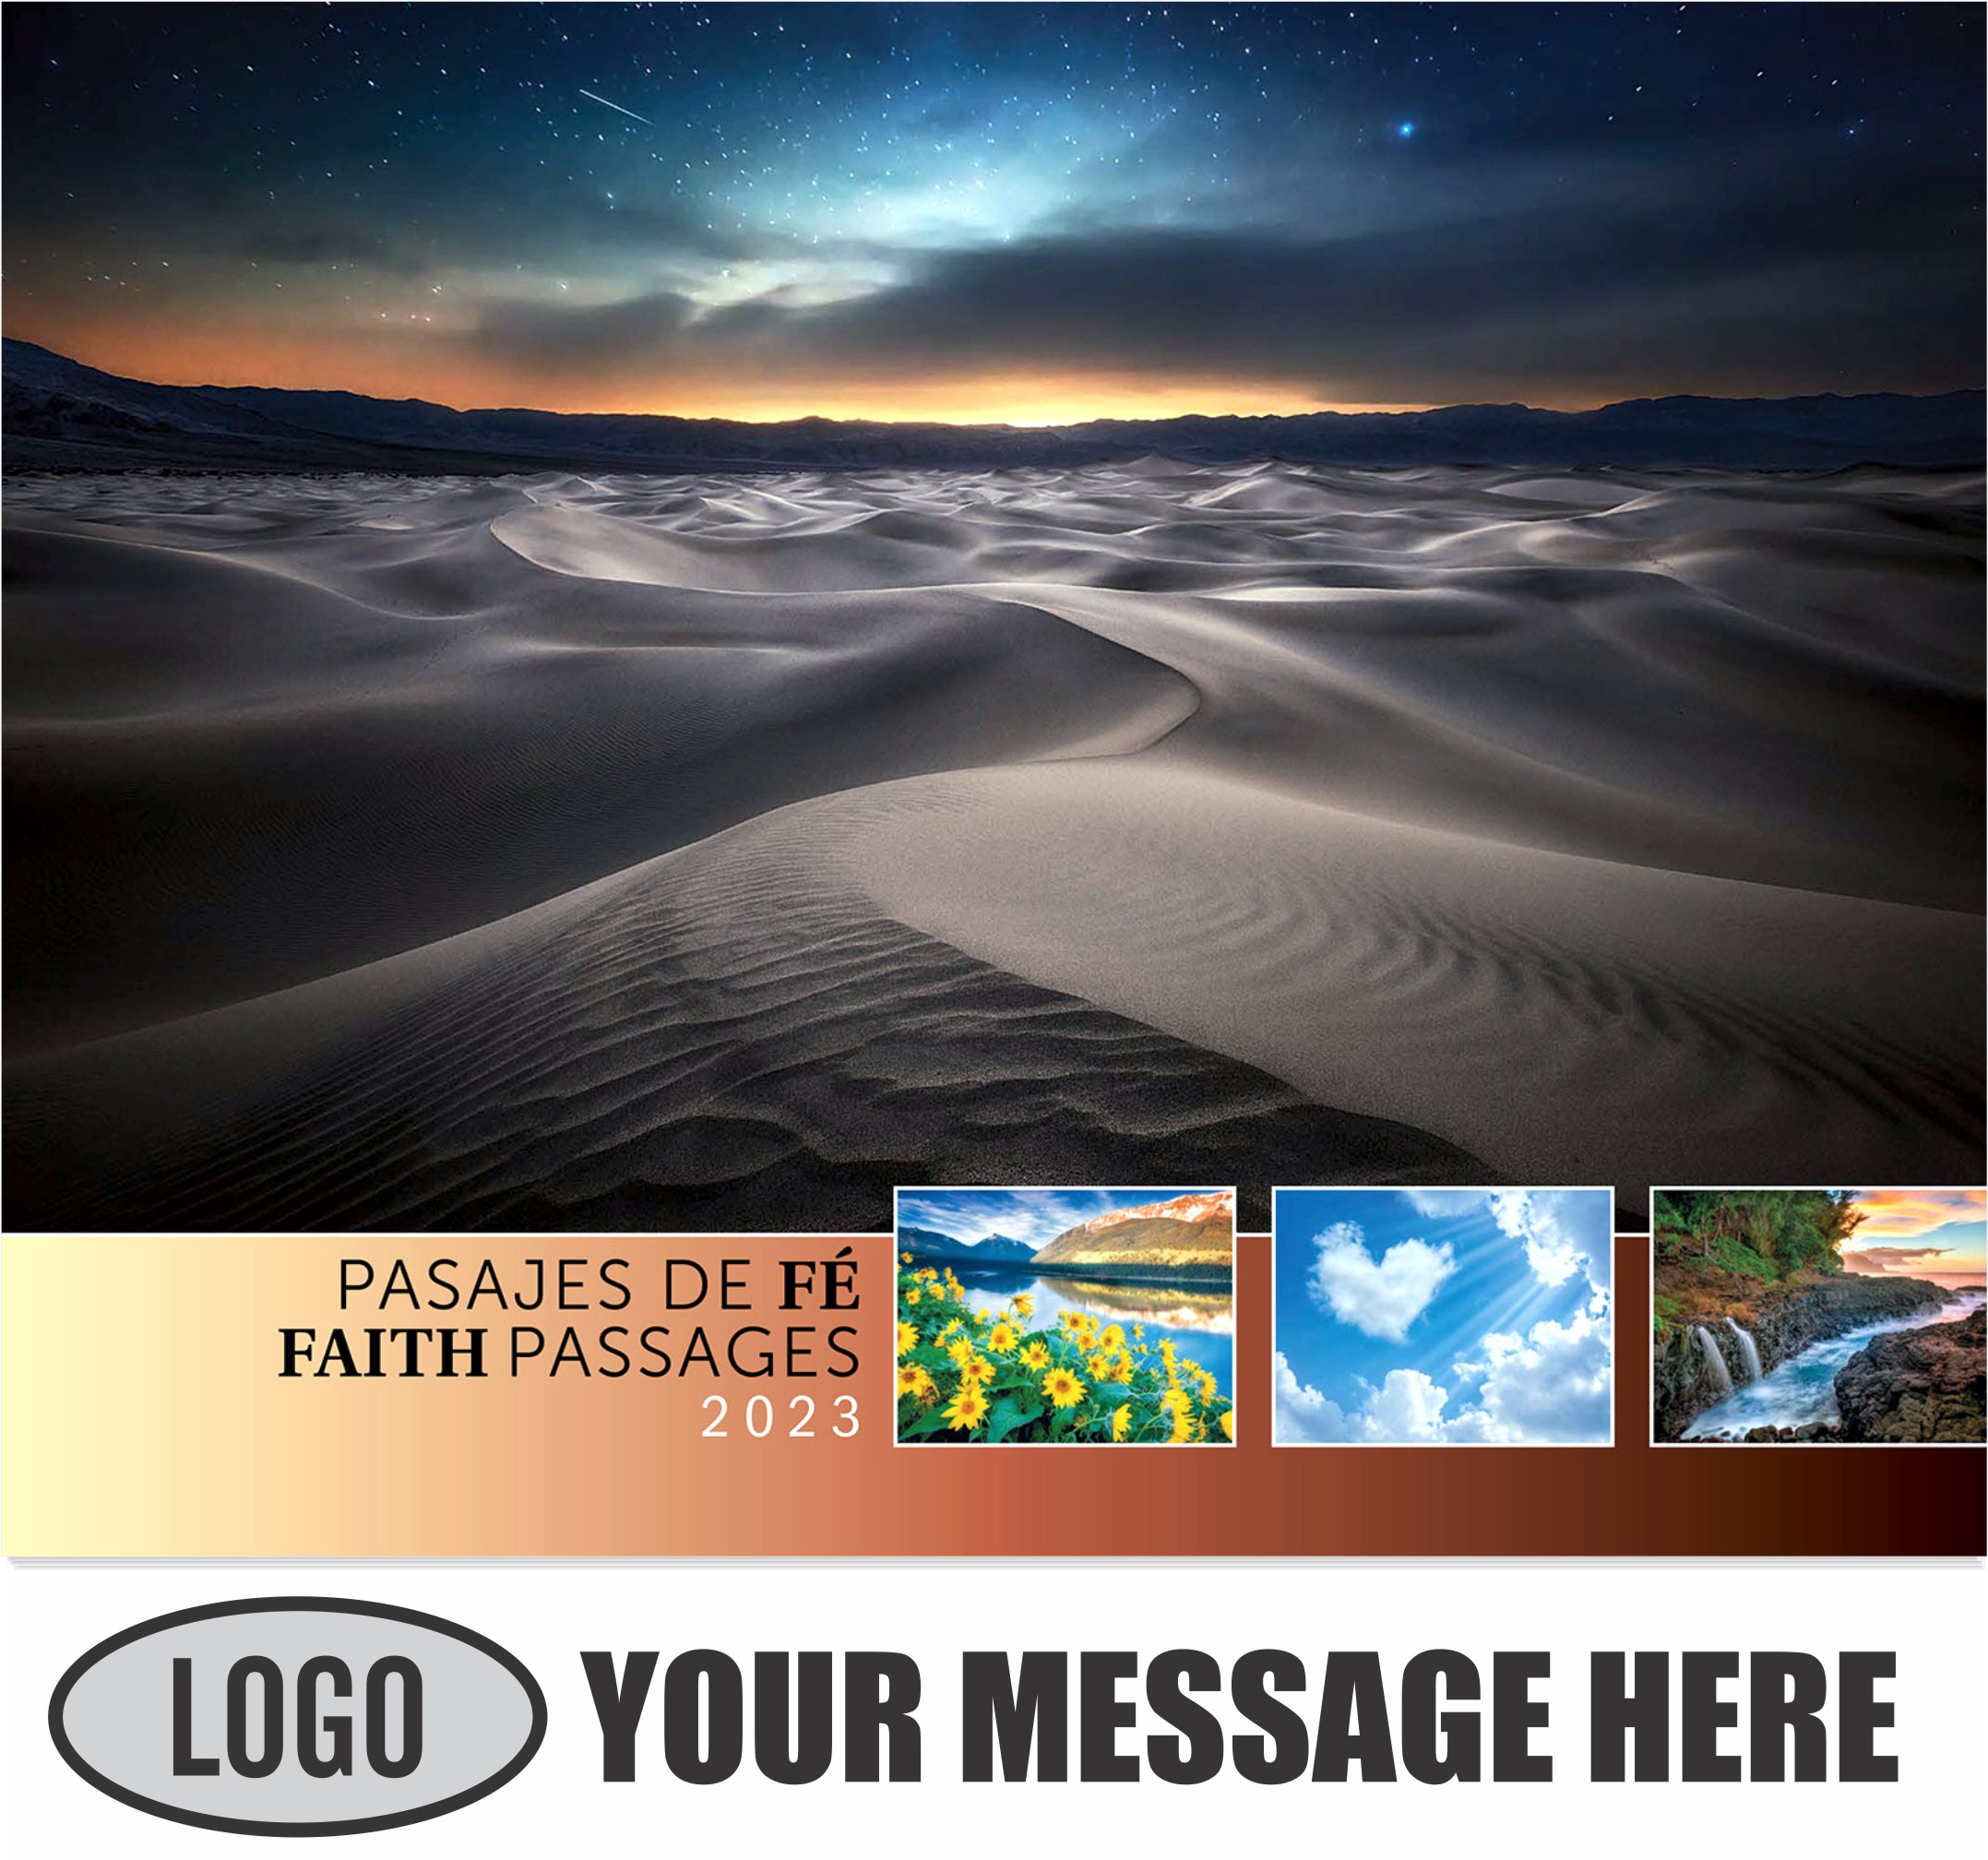 2023 Faith-Passages-Eng-Sp Promotional Calendar